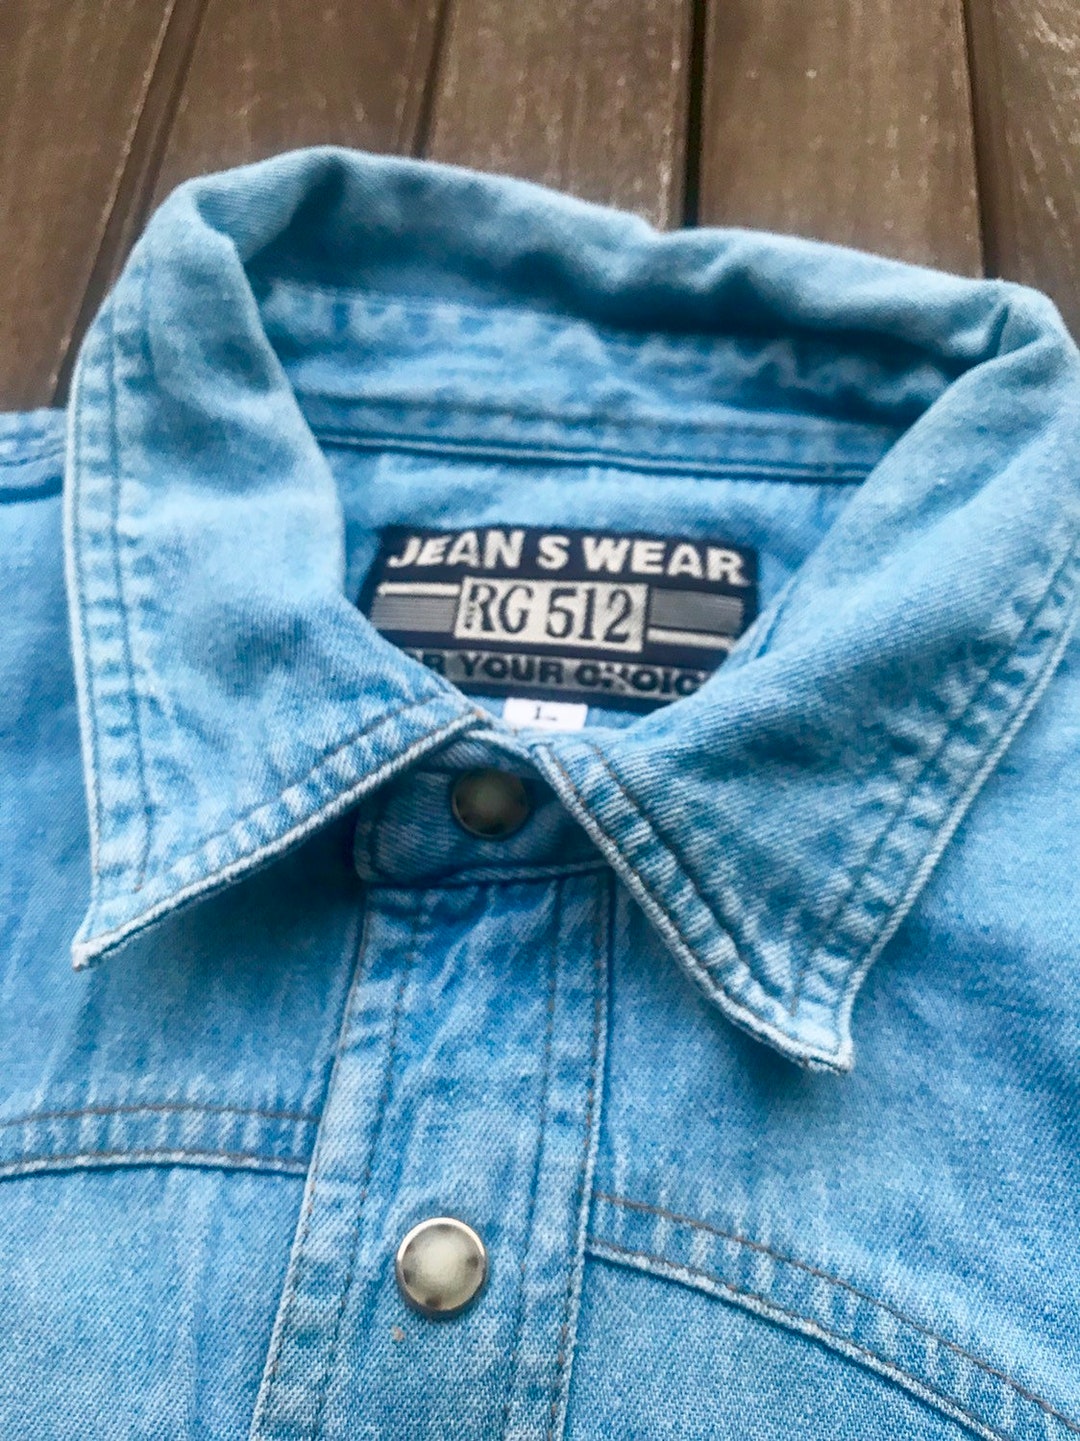 Jeans Shirt, Vintage 80s, Jeans S Wear RG 512, Size L, 42 